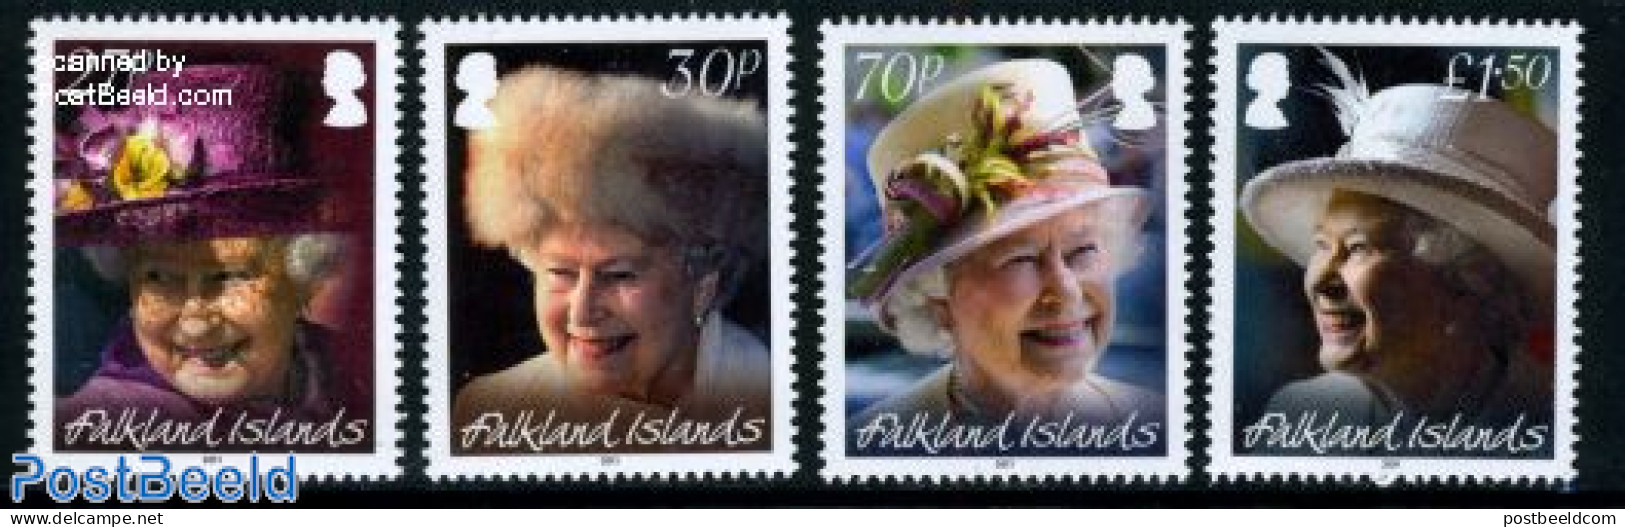 Falkland Islands 2011 Queen Elizabeth II 85th Birthday 4v, Mint NH, History - Kings & Queens (Royalty) - Königshäuser, Adel